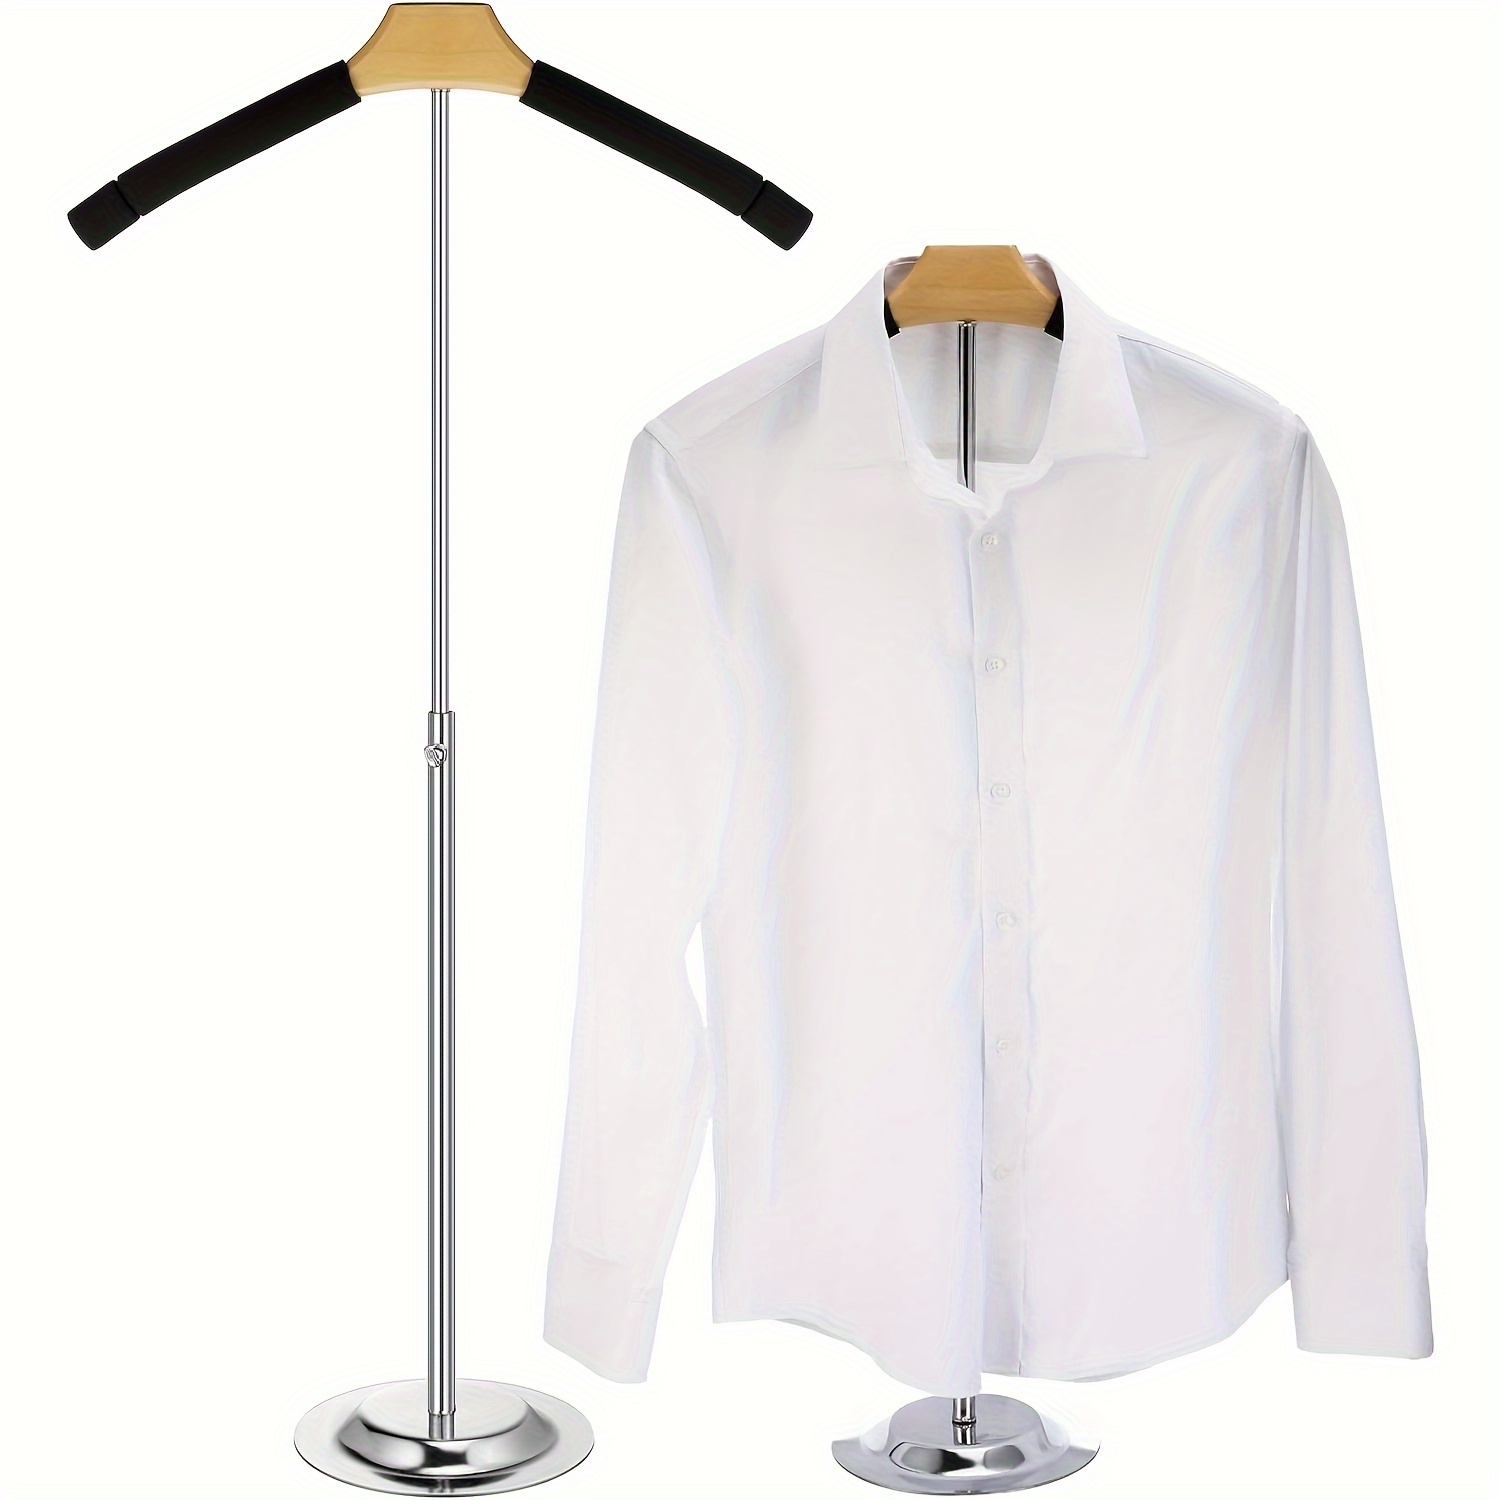 

1pc Adjustable Metal Clothes Hanger Stand, Flexible Shoulder Rack, Portable T-shirt Display, Black Garment Holder For Retail & Vendor, Coat Hanging Organizer